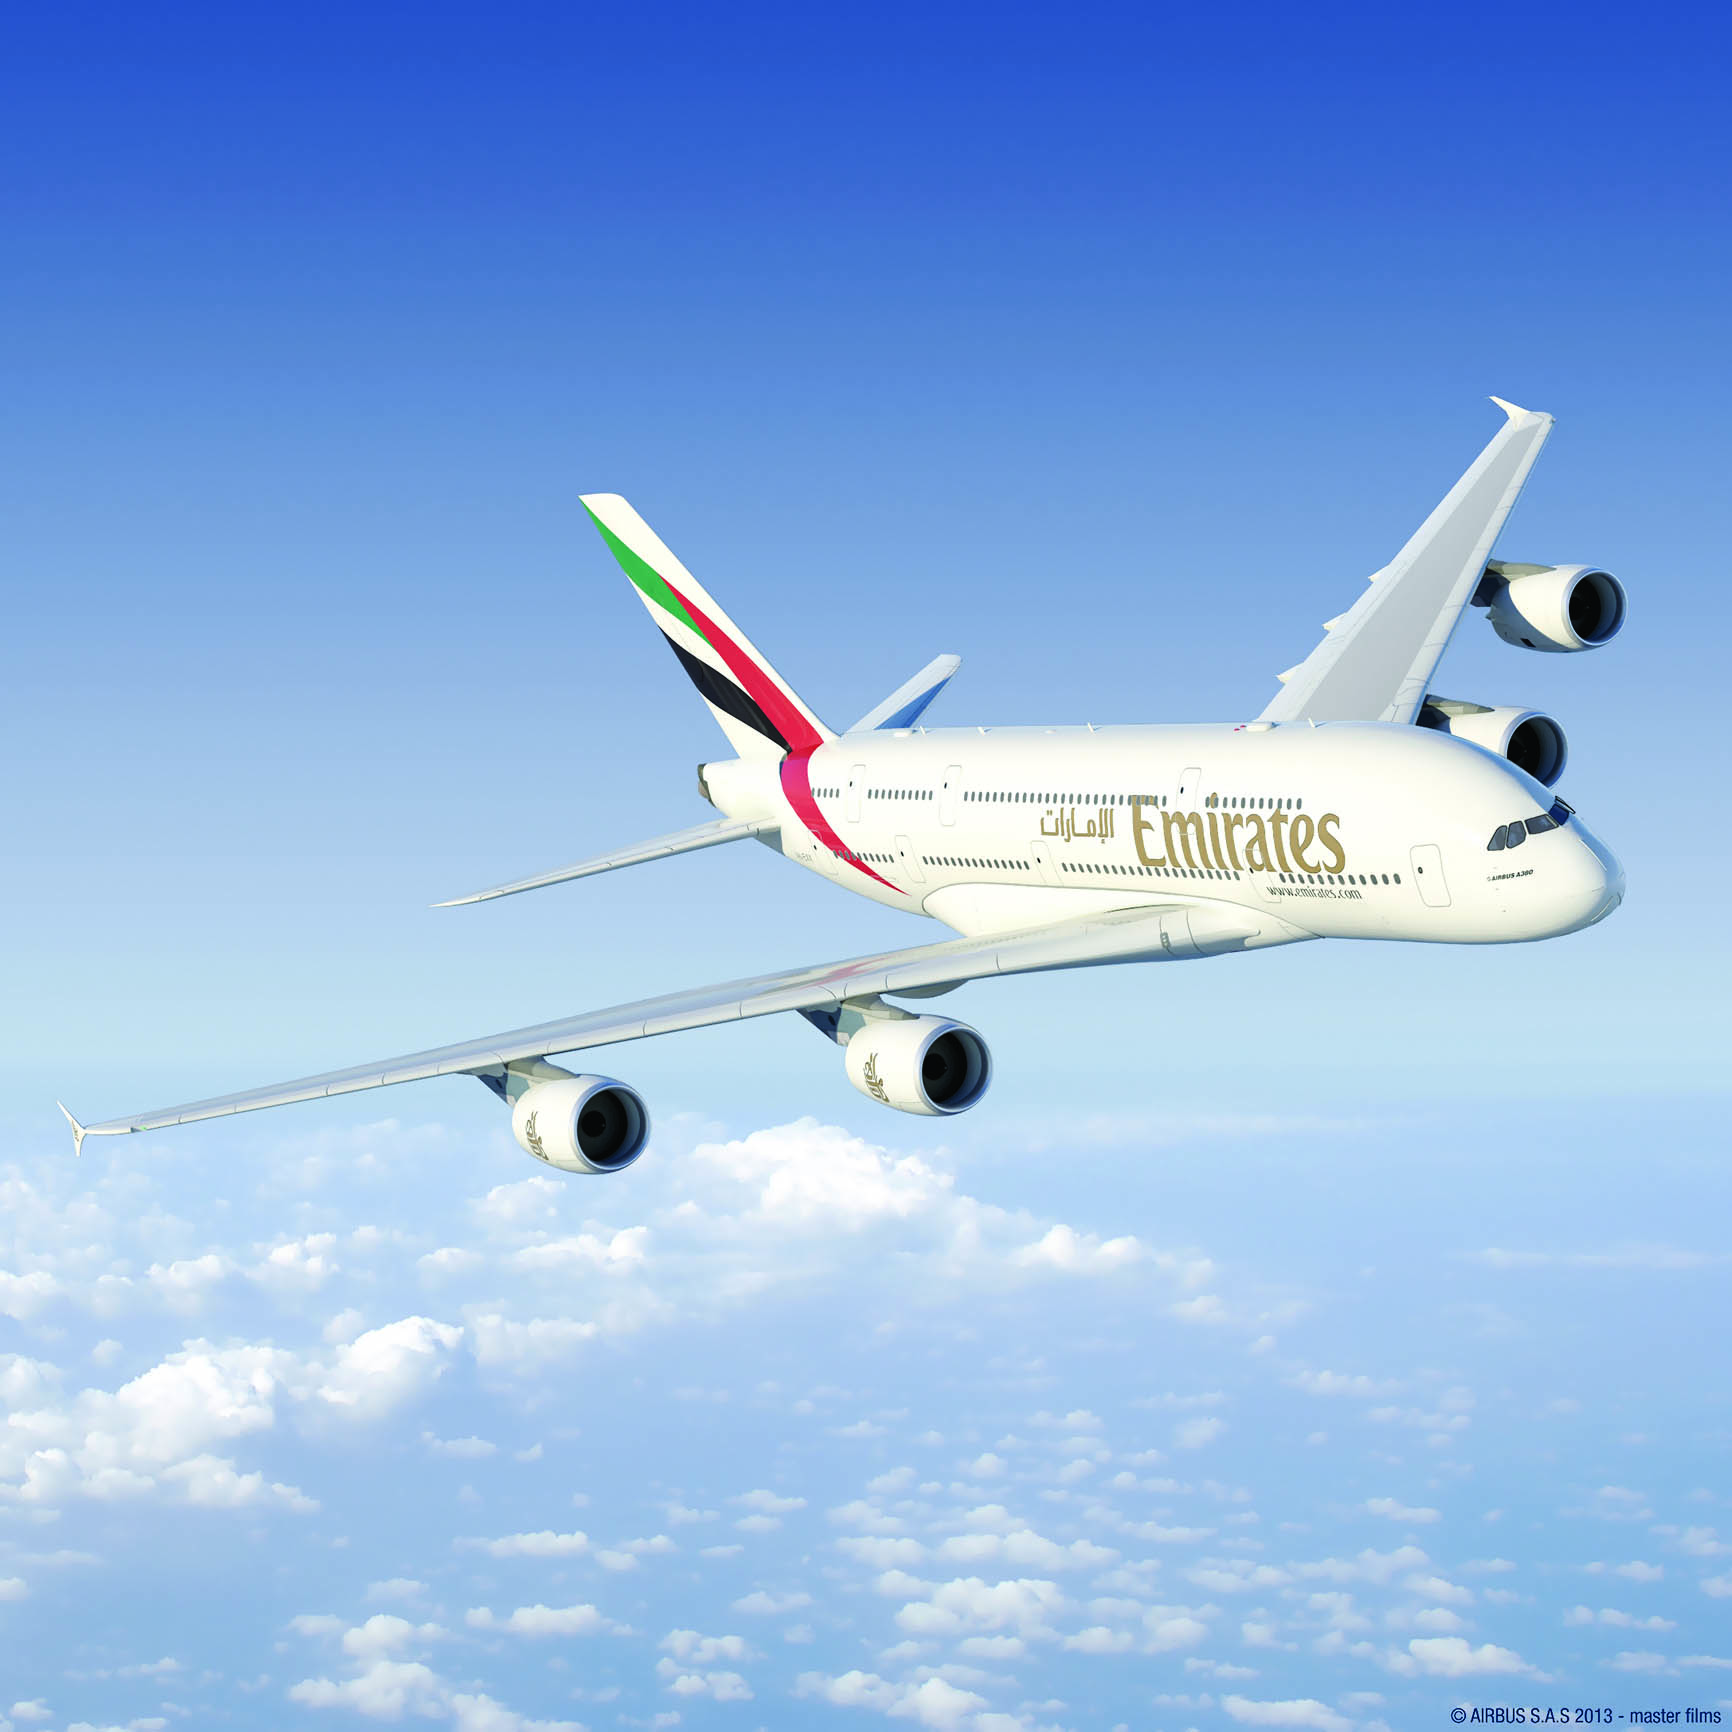 احتفالاً بـ25 عاماً على إطلاق خدماتها إلى السلطنة
طيران الإمارات تشغل طائرة A380 إلى مسقط لمرة واحدة